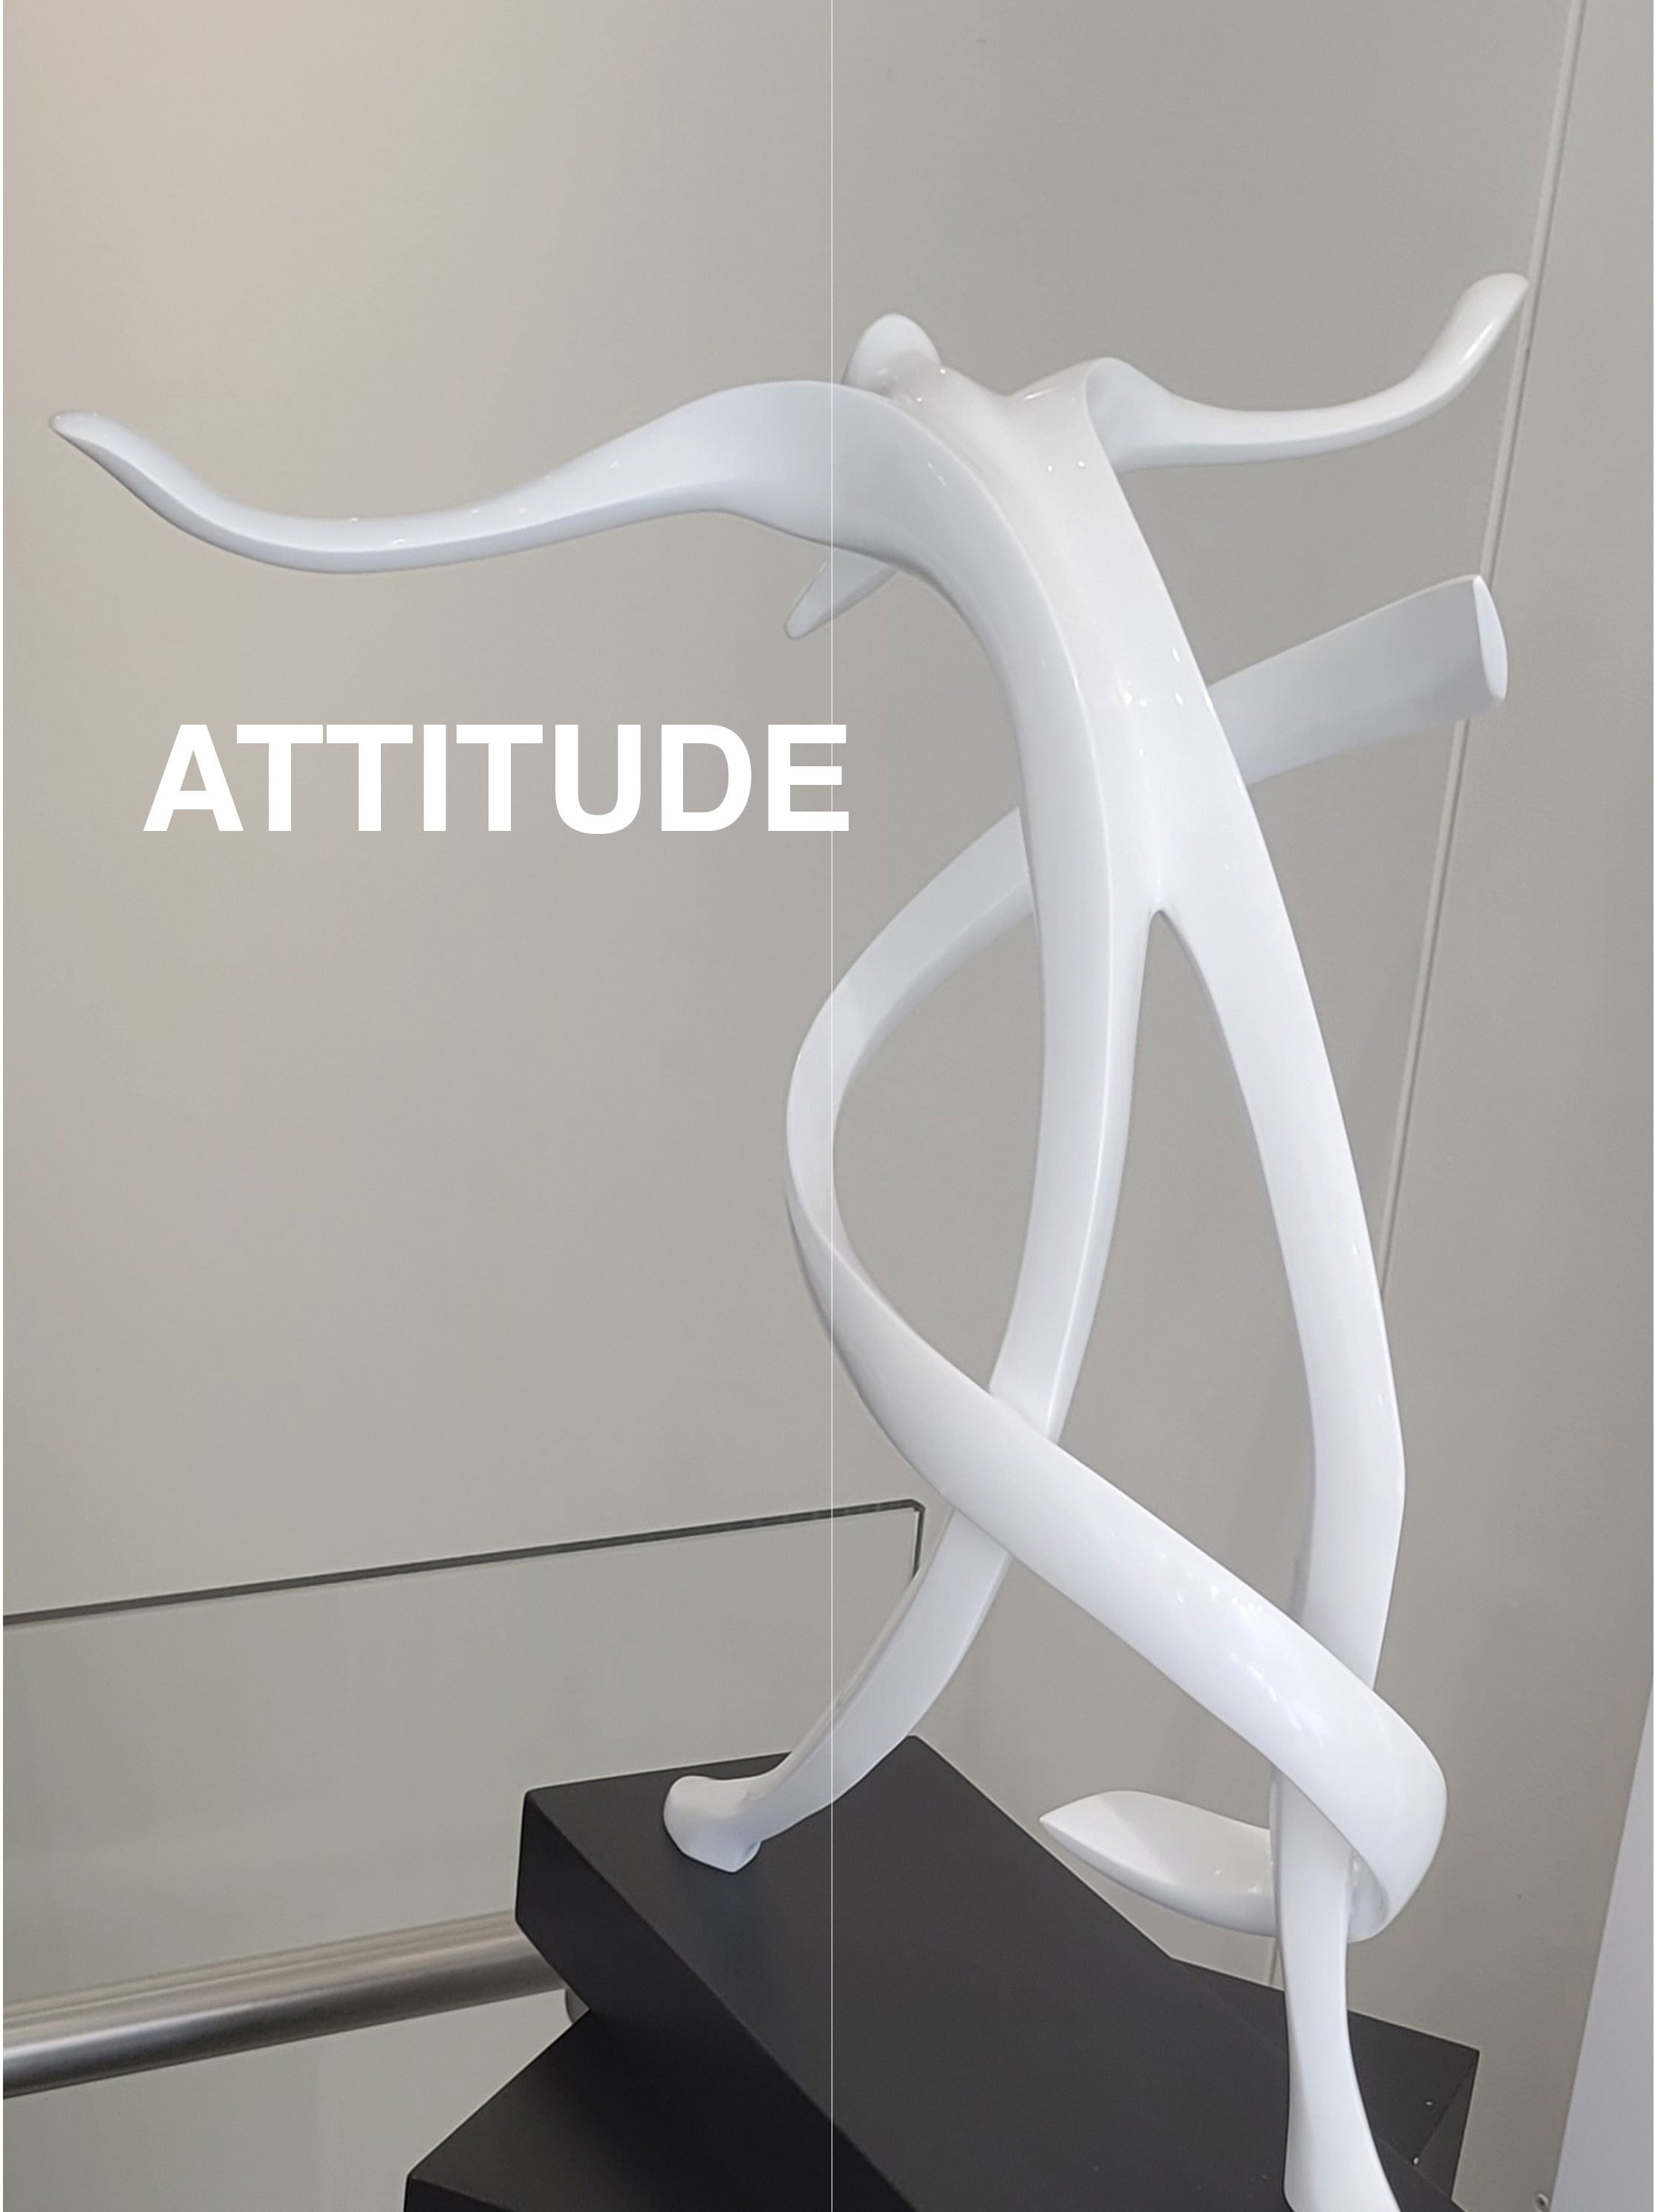 Attitude-01.jpg